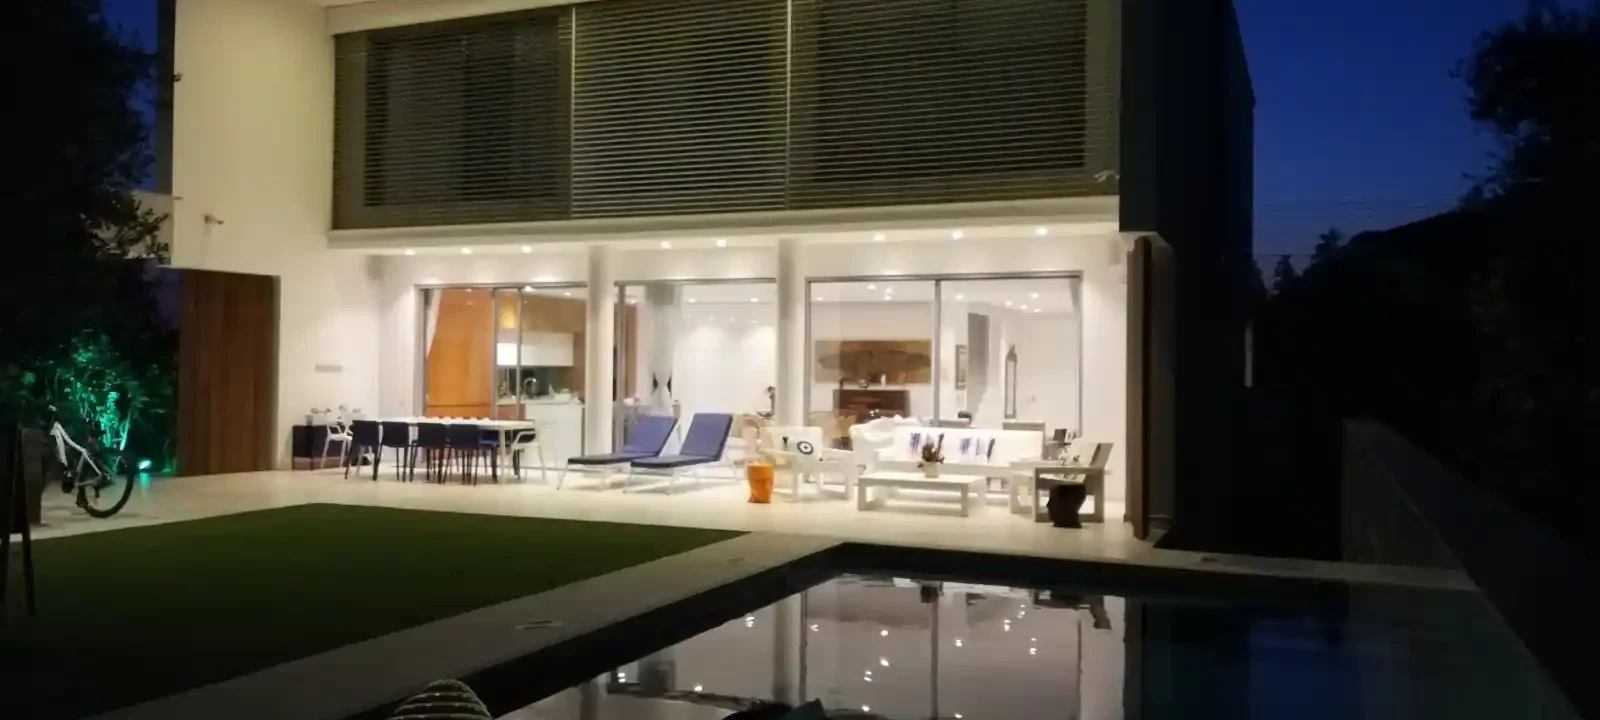 5-bedroom villa to rent €6.500, image 1